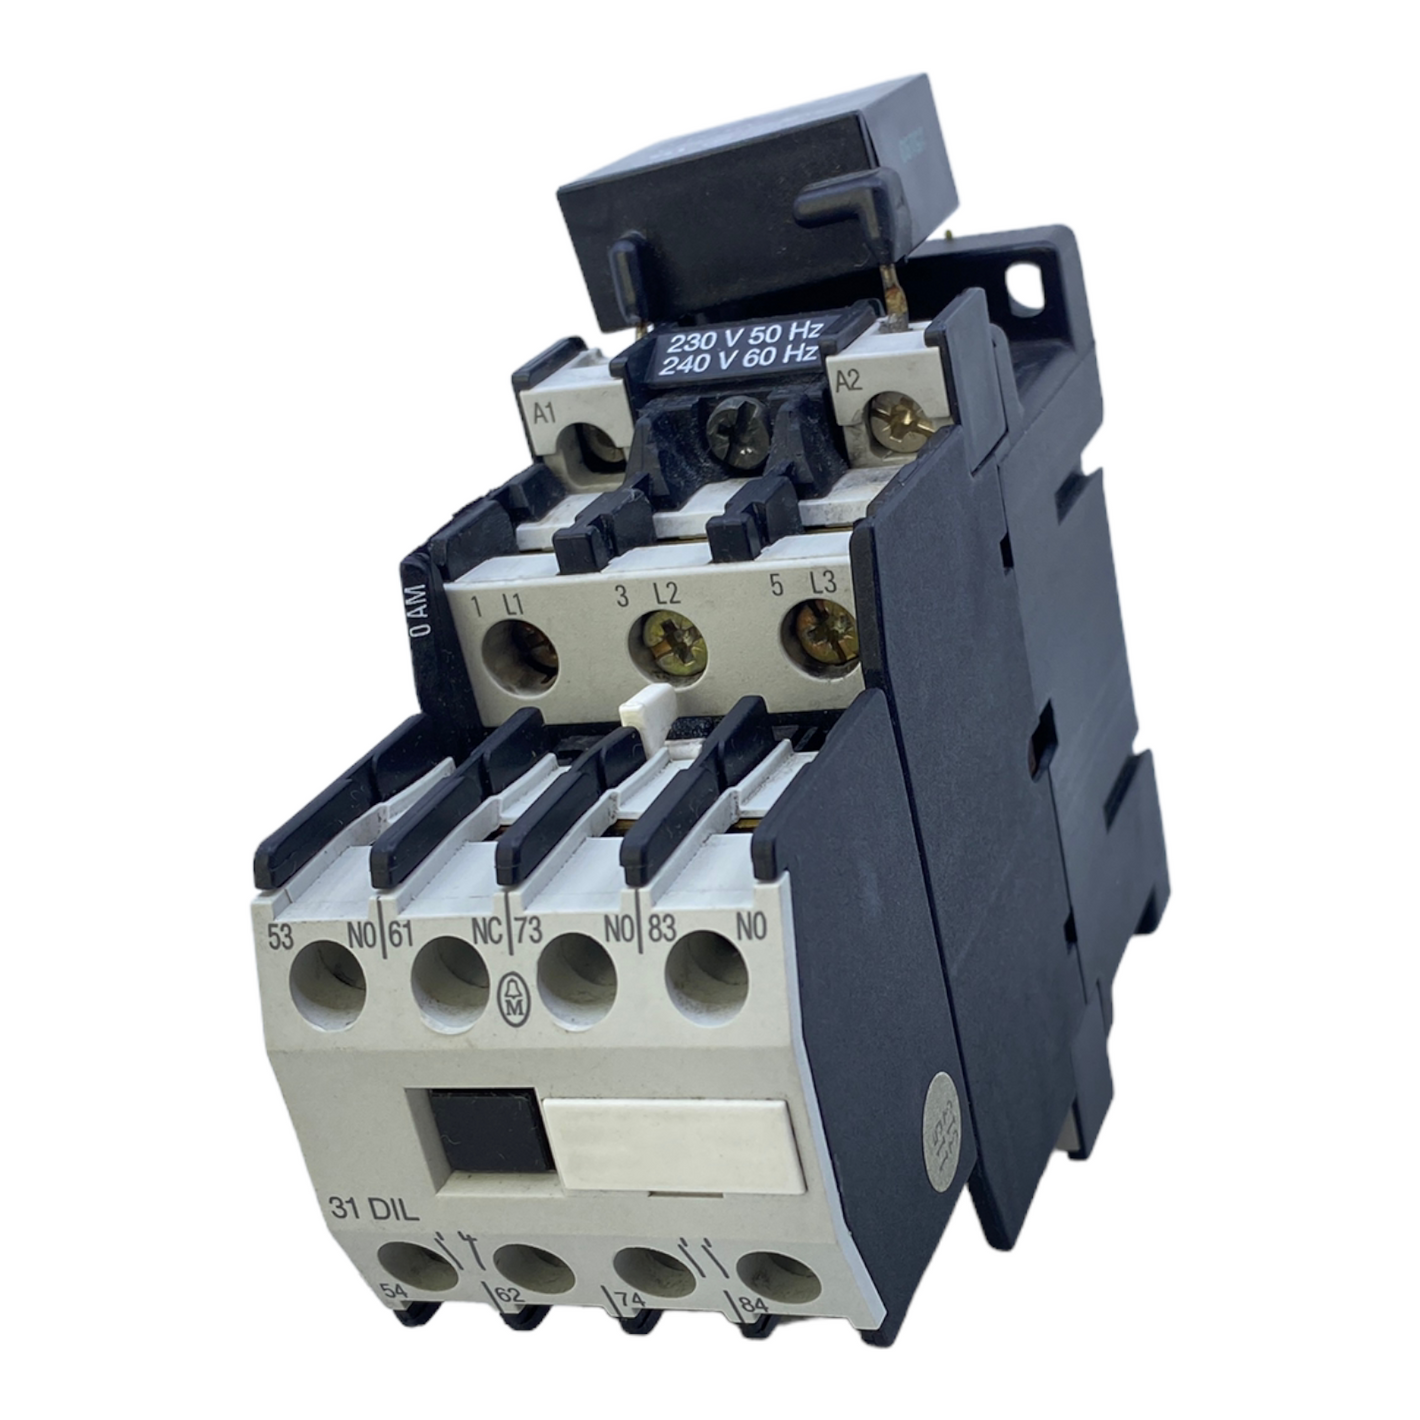 Klöckner Moeller DIL0AM circuit breaker 230V 50Hz / 240V 60Hz 